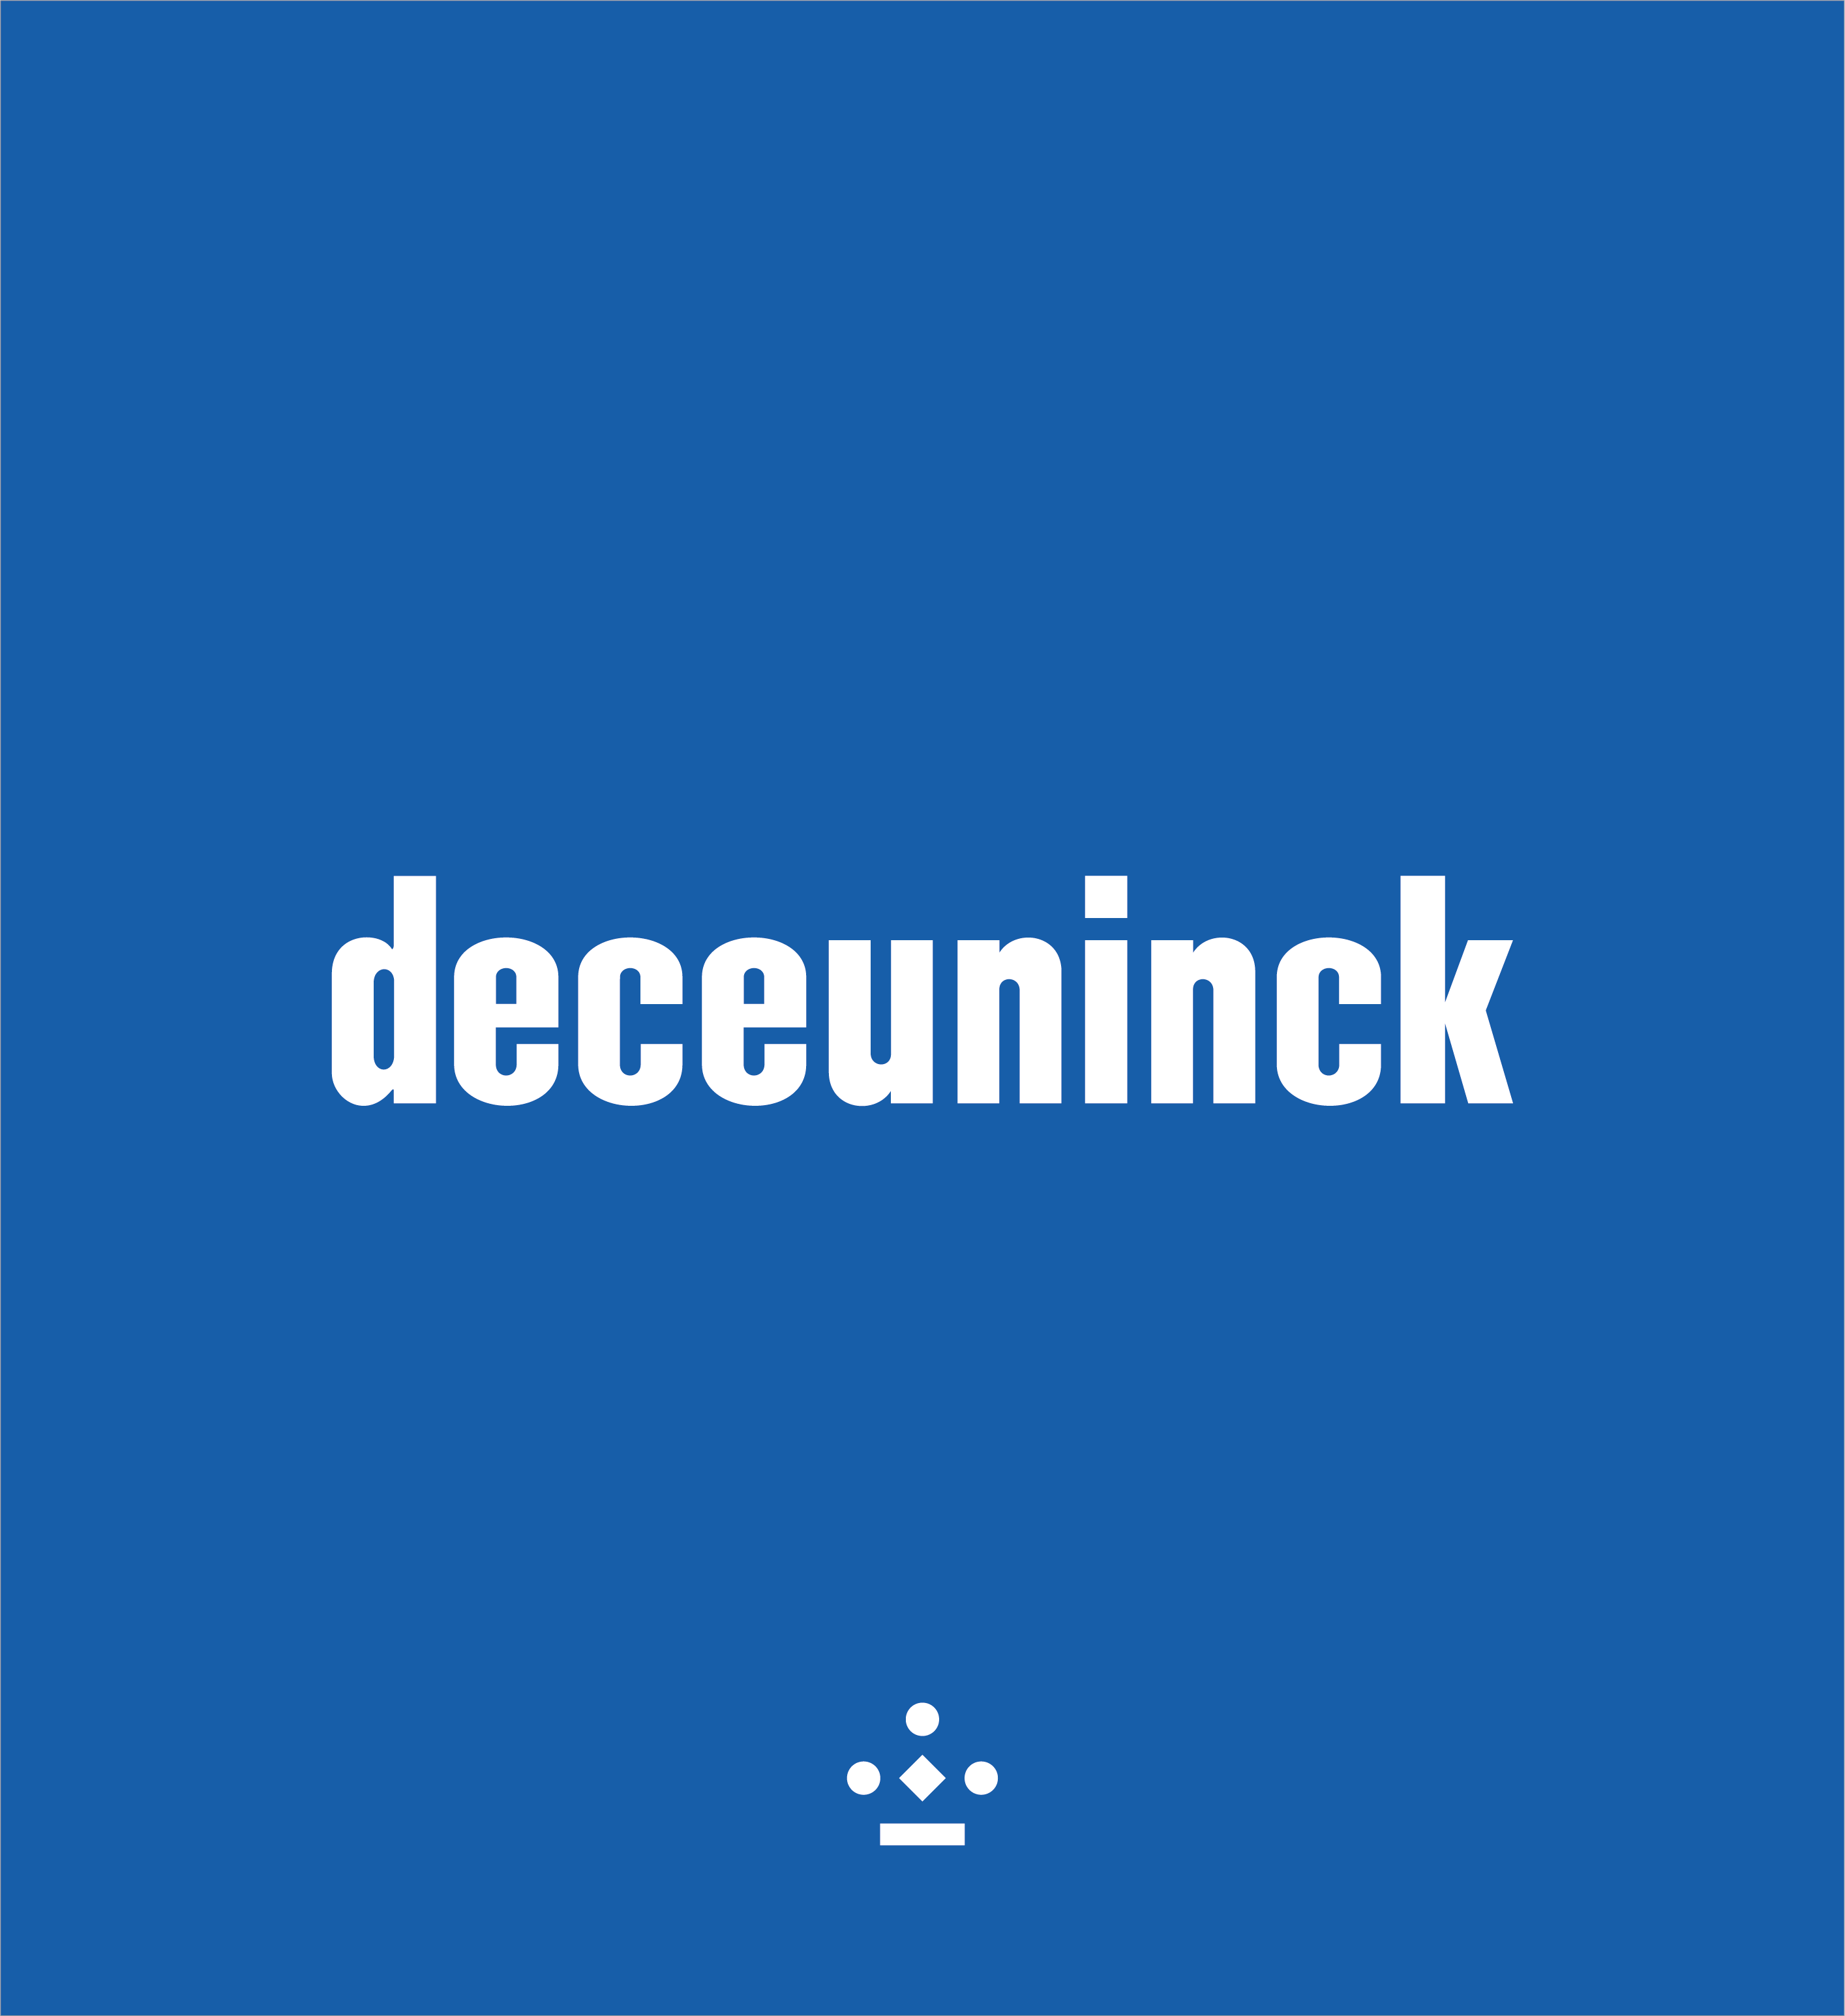 Deceuninck